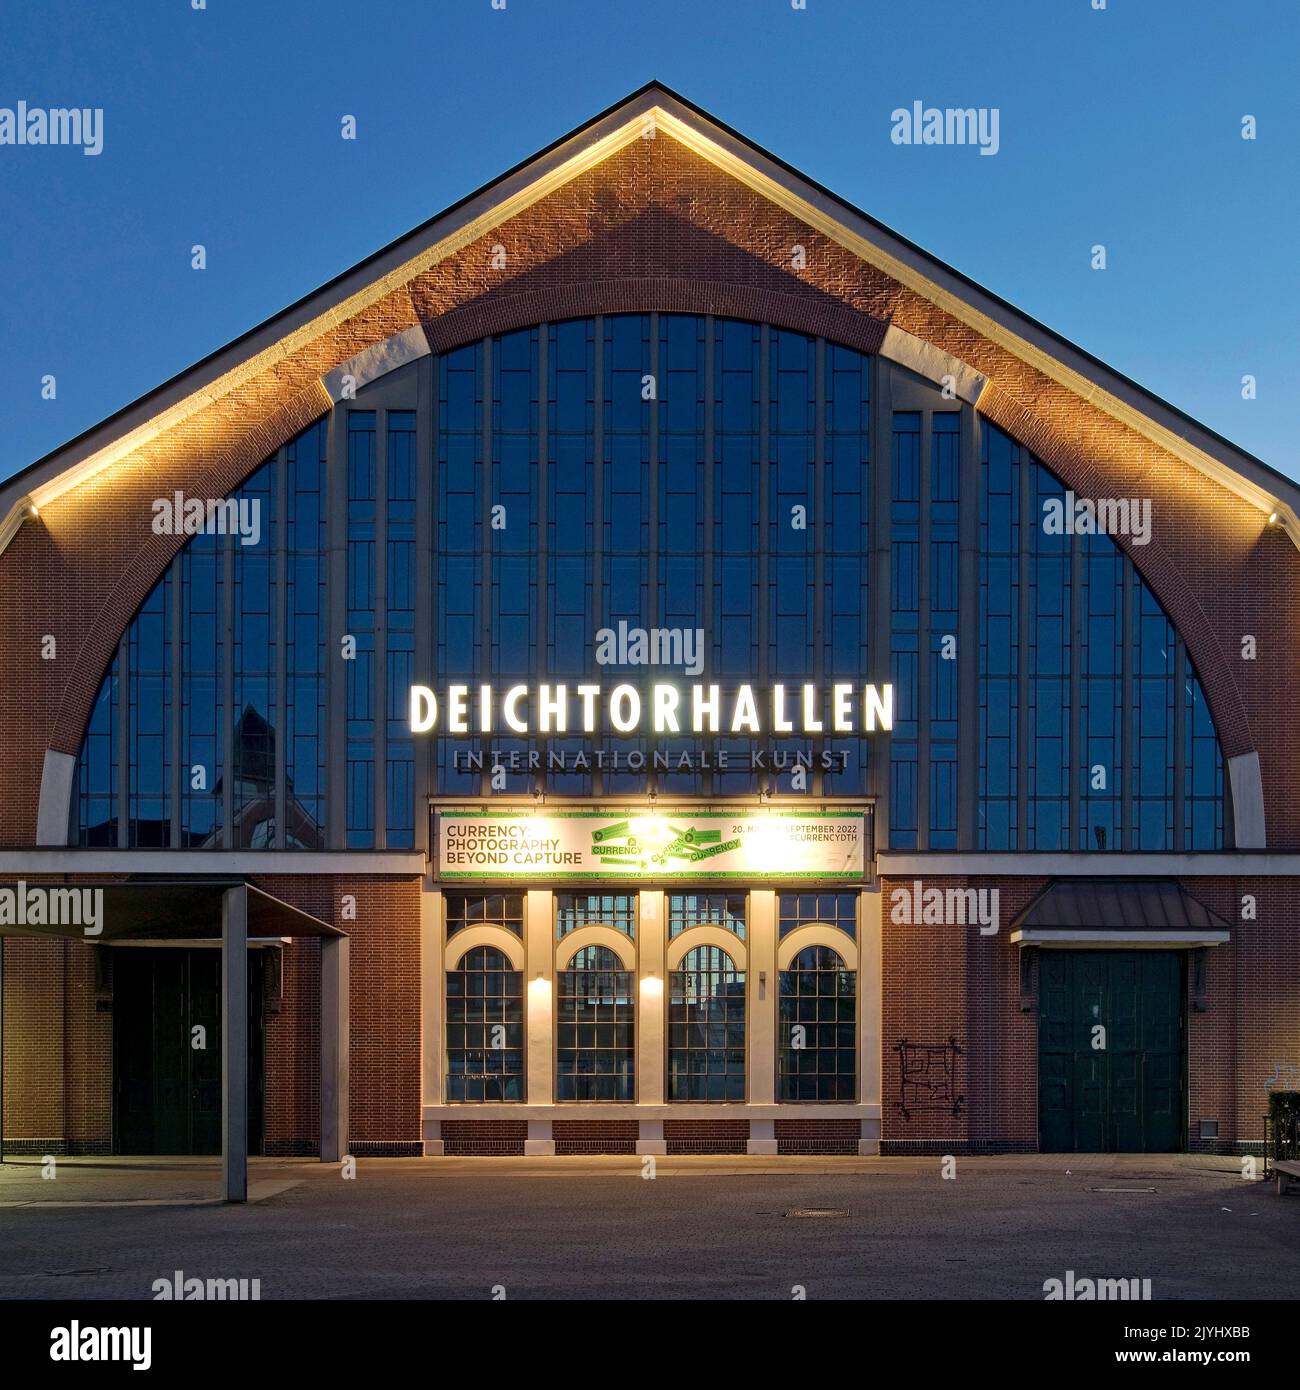 Deichtorhallen in serata, sala espositiva per le arti contemporanee, Germania, Amburgo Foto Stock